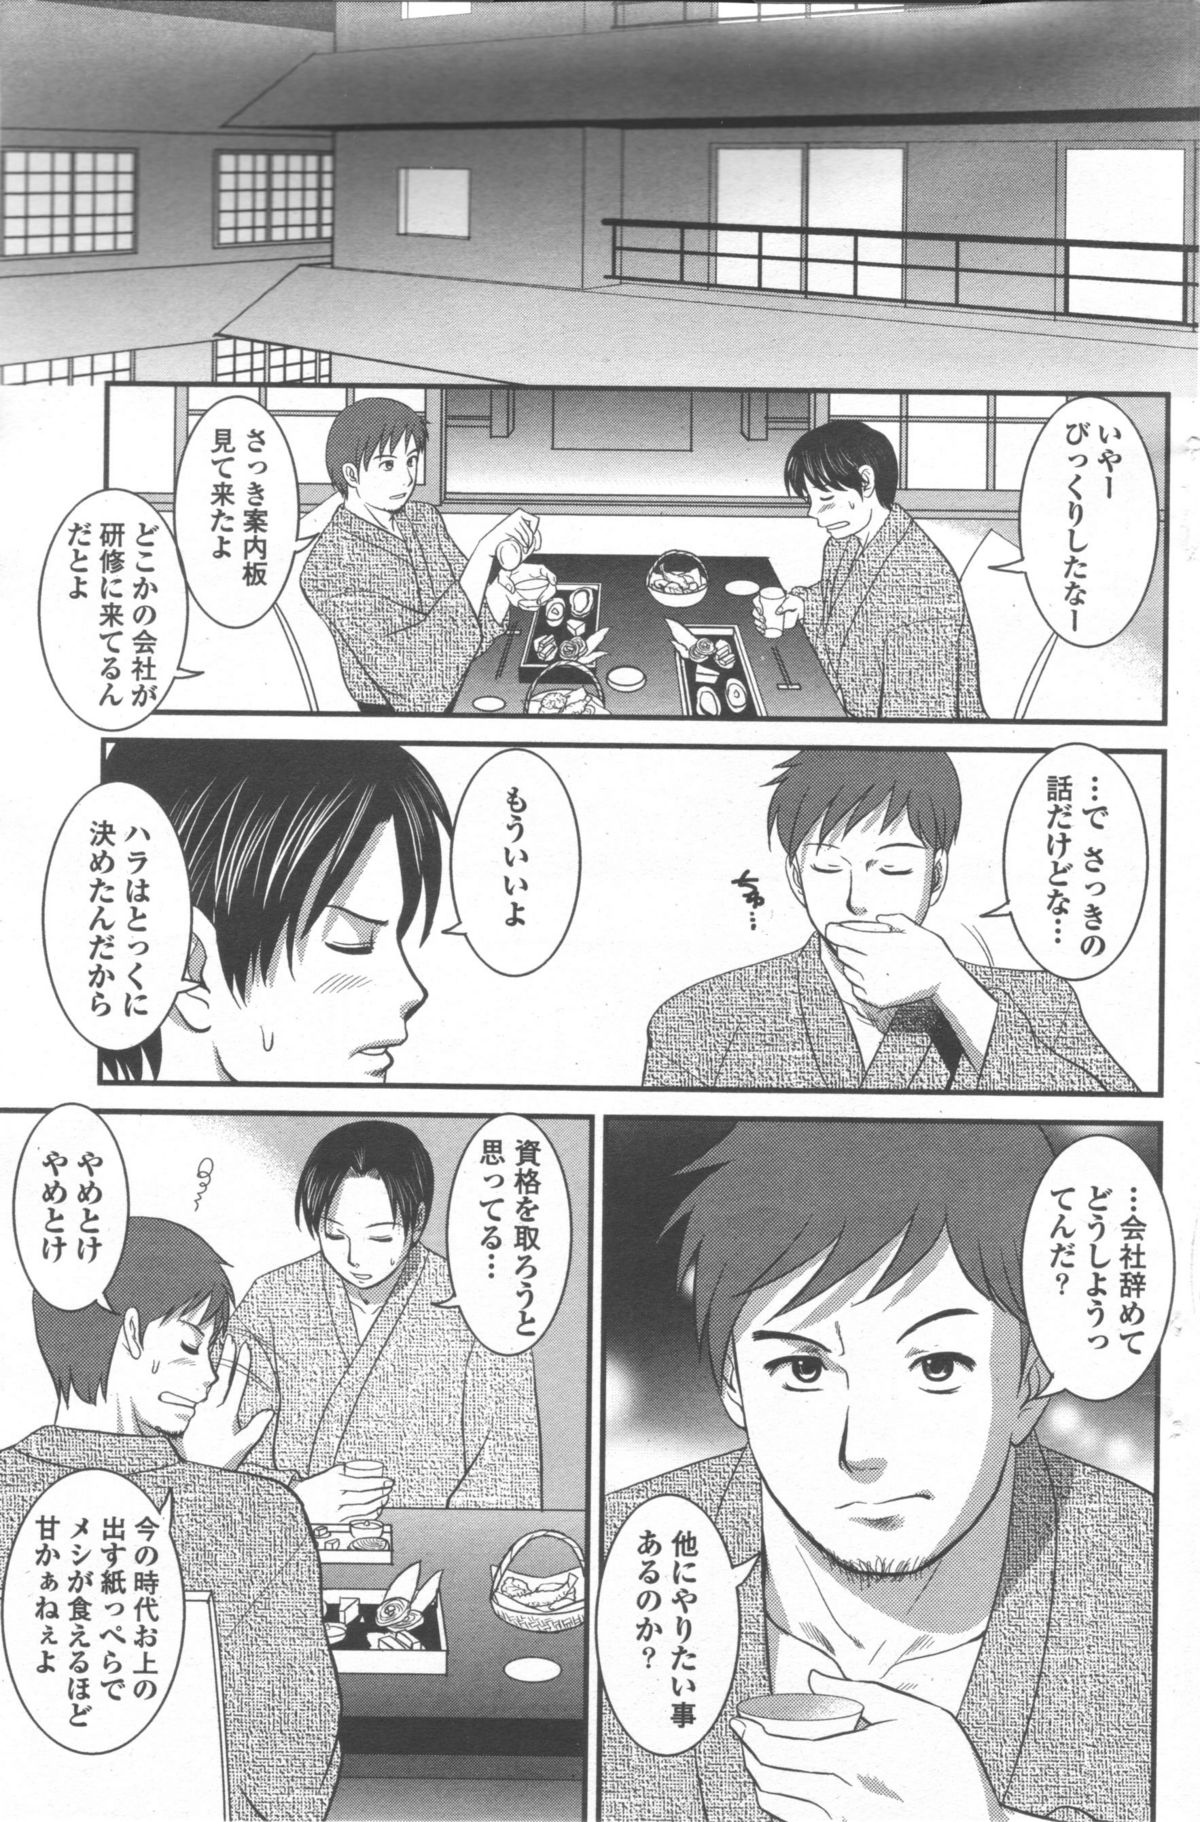 Haken no Muuko-san 9 [Saigado] page 6 full